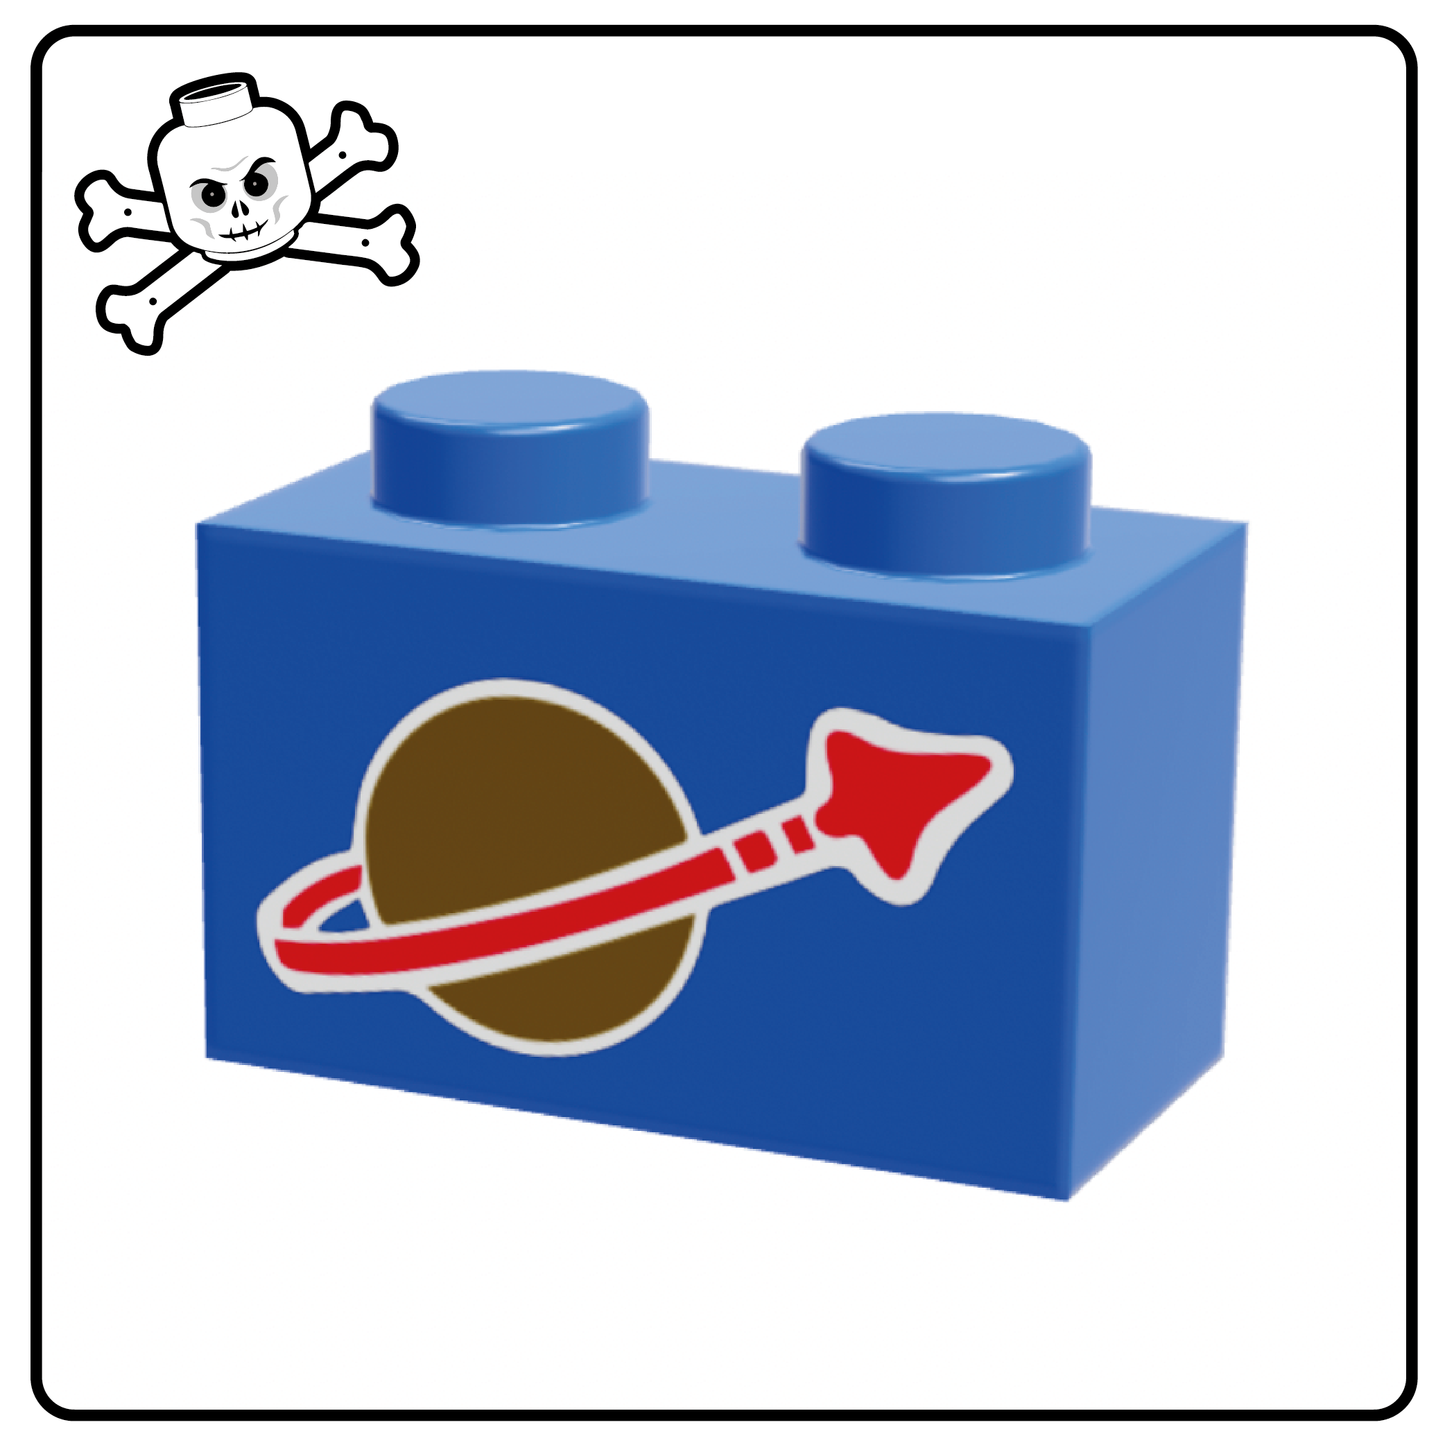 Logotipo espacial clásico del ladrillo LEGO® 1x2